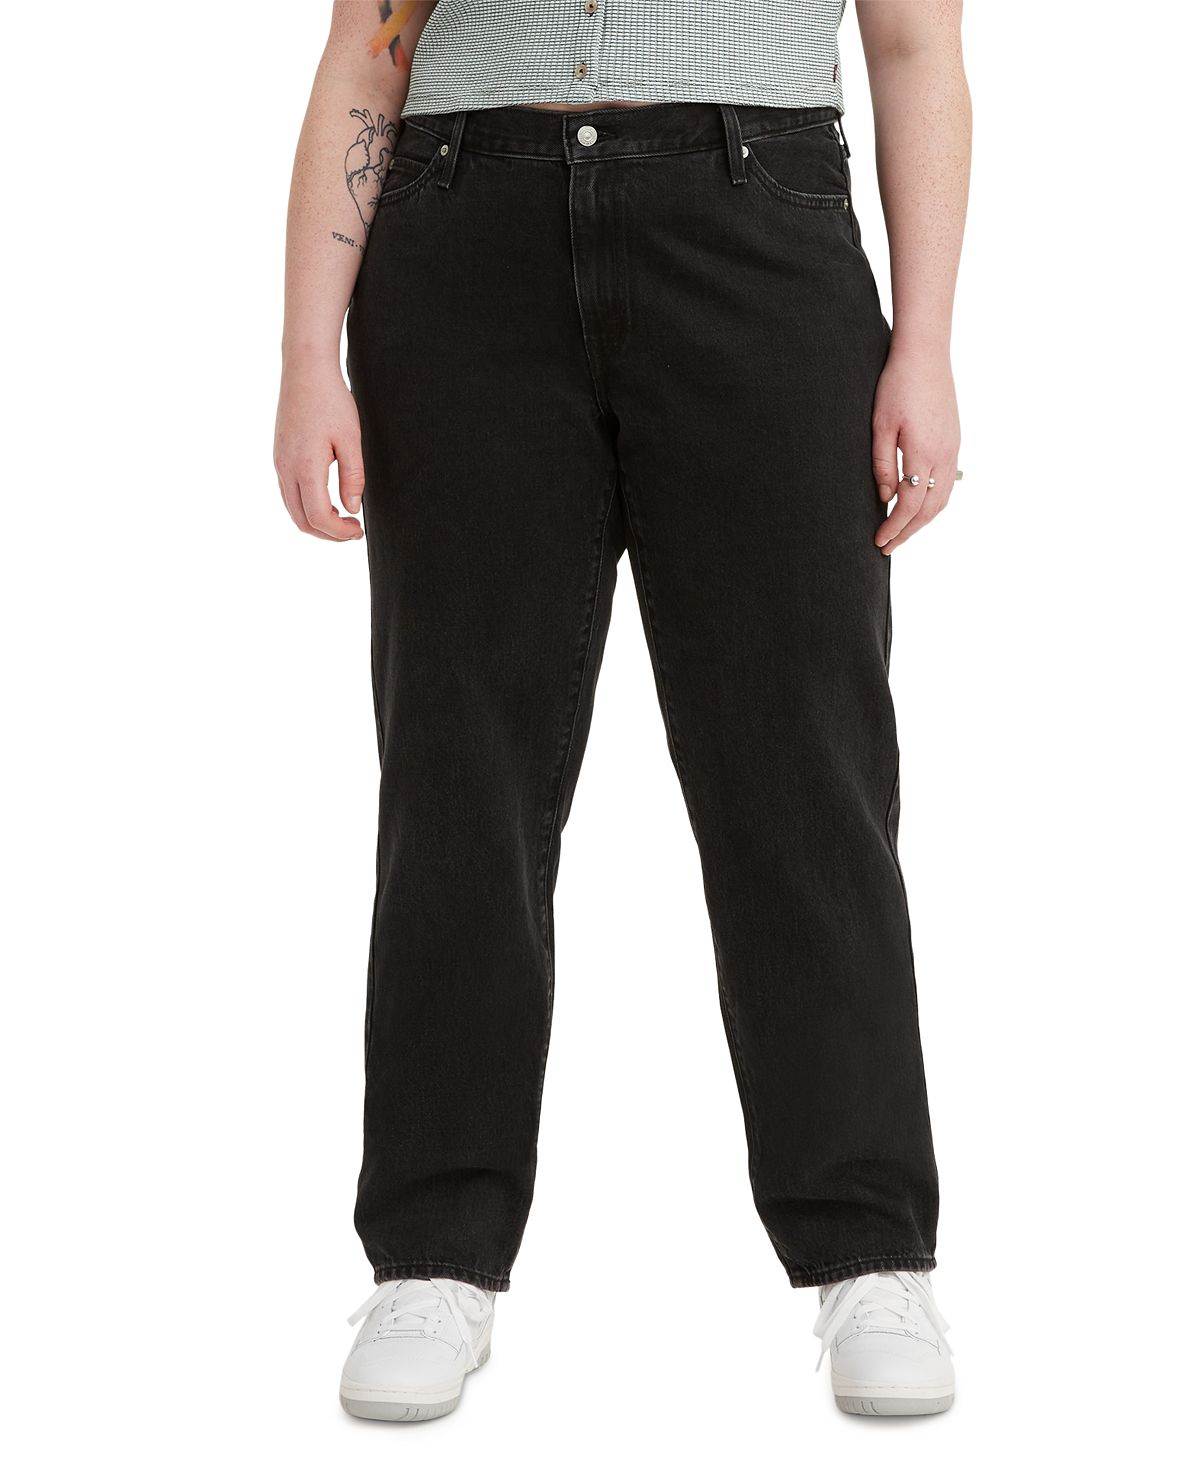 Модные женские мешковатые джинсы больших размеров 94-го года Levi's цена и фото